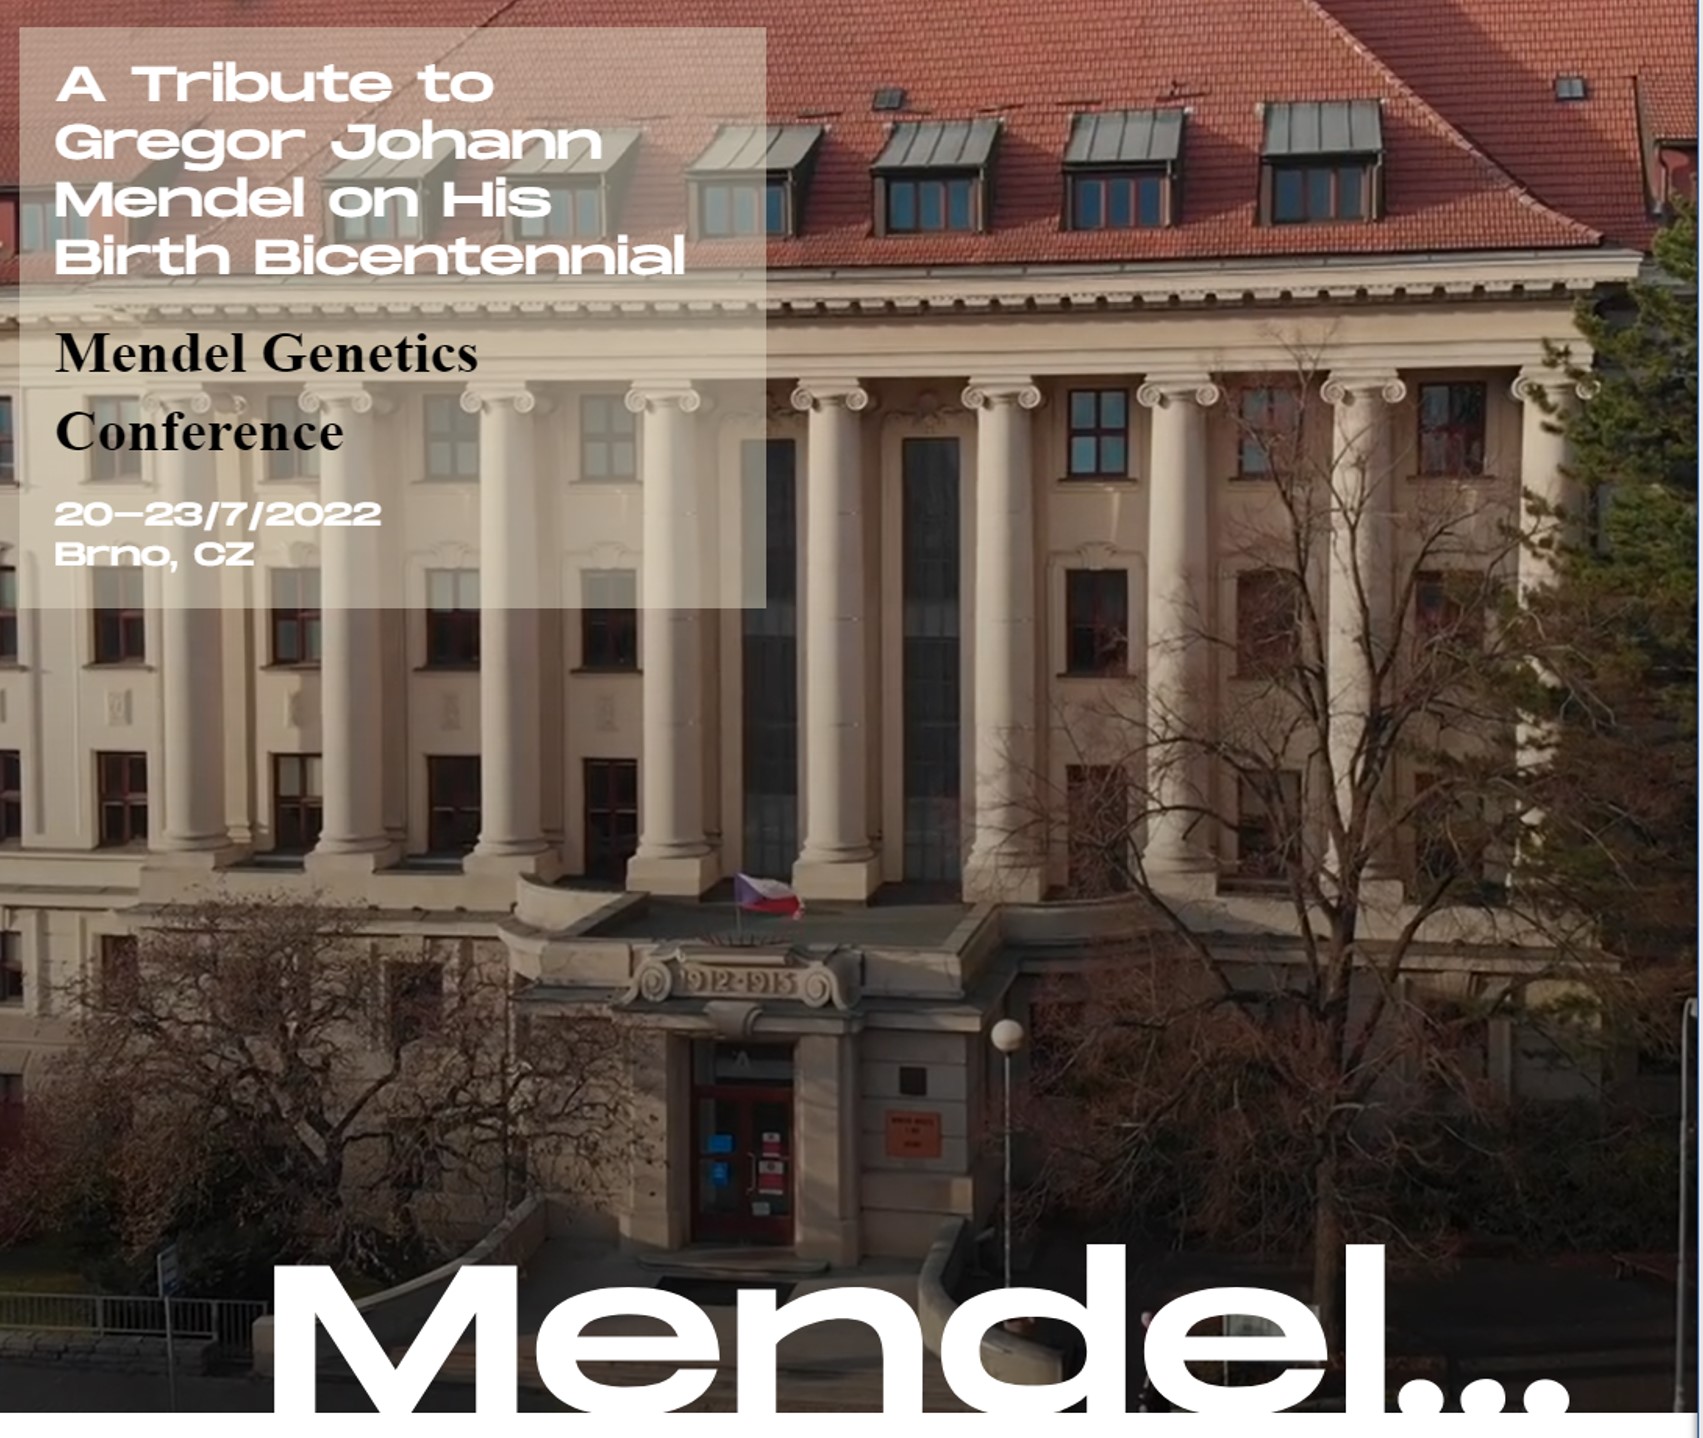 Poziv na sudjelovanja na “Mendel Genetics Conference” – konferenciji posvećenoj dvjestotoj obljetnici rođenja Gregora Johanna Mendela